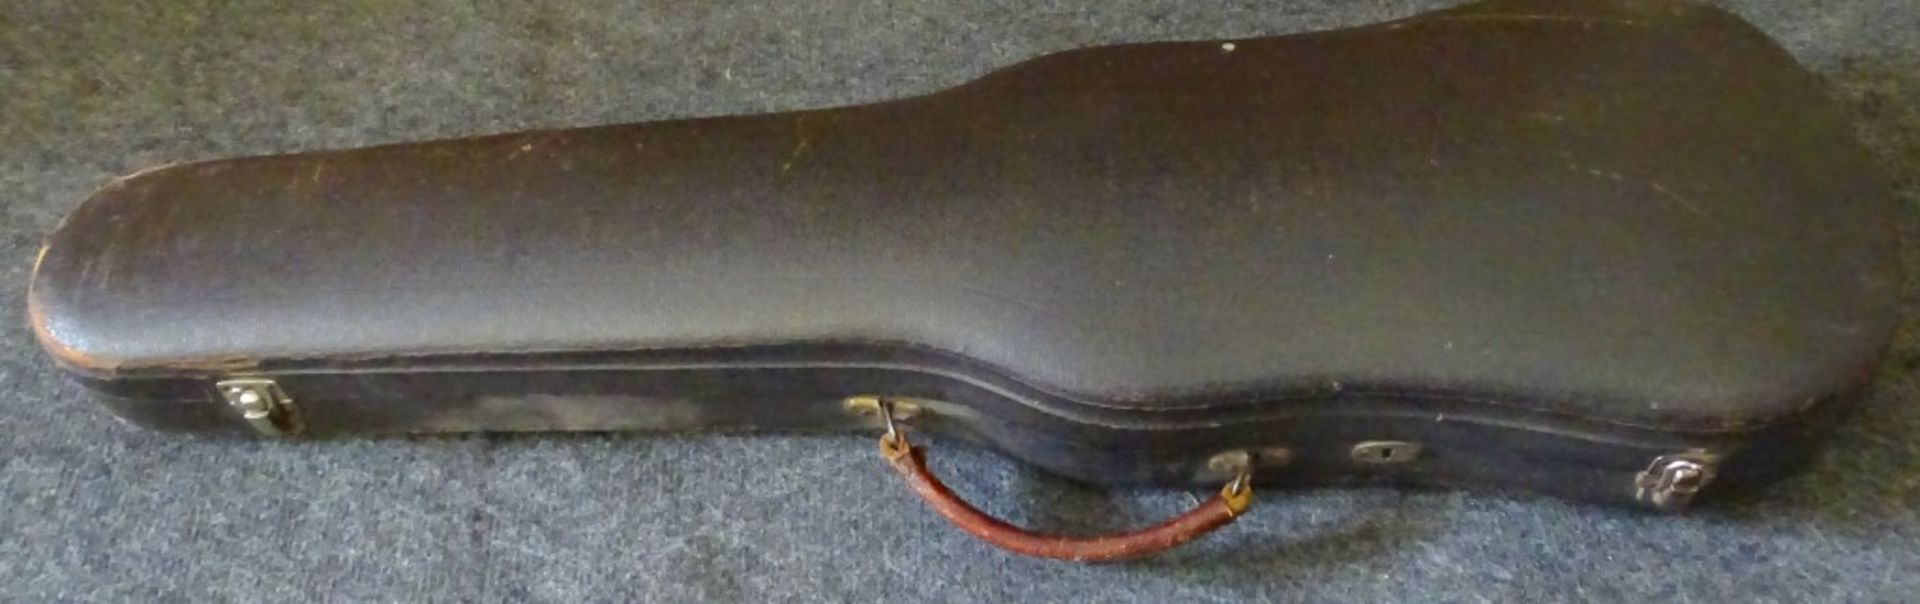 Geige, Stradivari Kopie,Modell Georg Schuster Markt Neukirchen mit Etikett in Geigen Korpus,anbei - Bild 2 aus 10